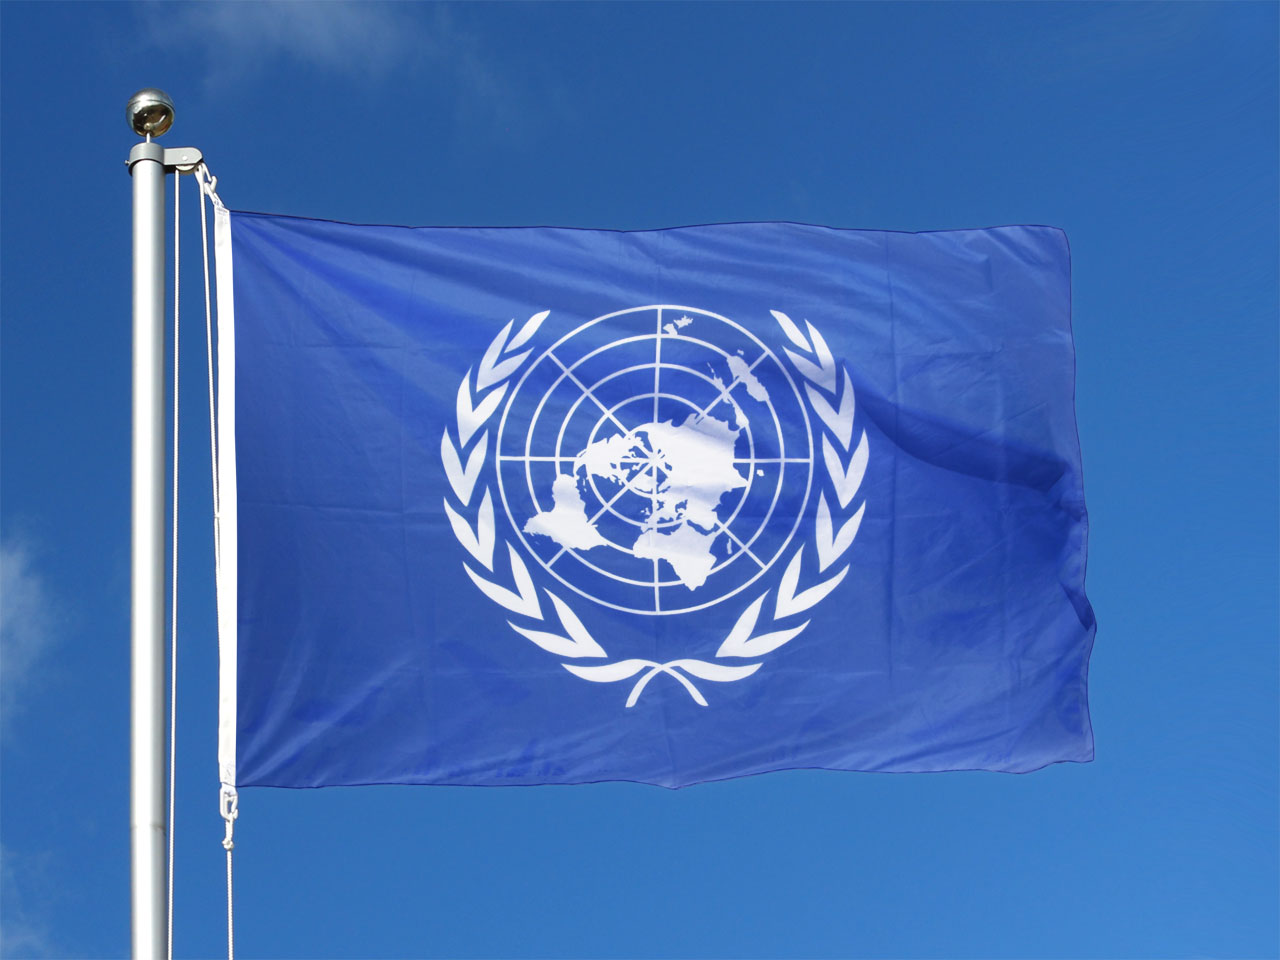 Оон регистрация. Организация Объединенных наций (ООН). Совет безопасности ООН флаг. Флаг организации Объединенных наций. Флаг ООН 1945.